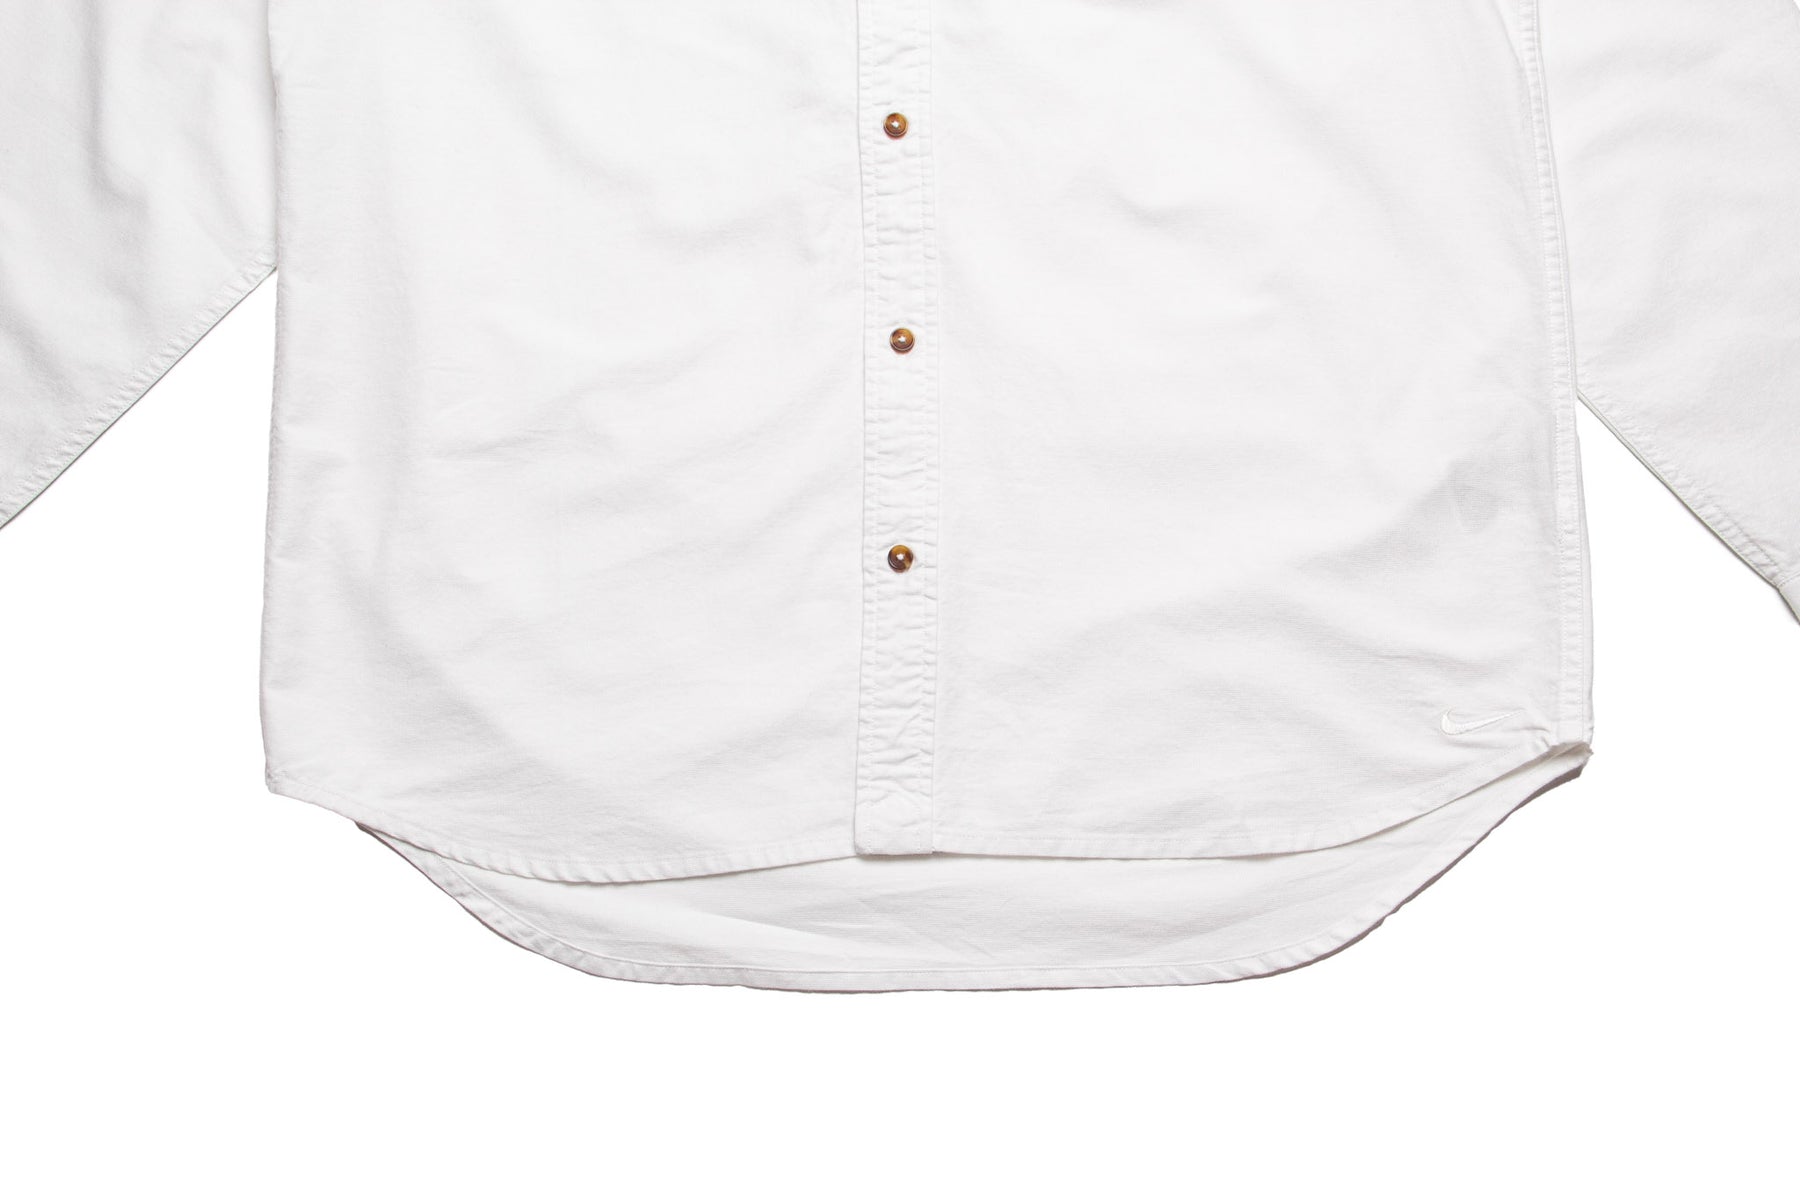 Nike Life Oxford Button-Down Shirt "Summit White"